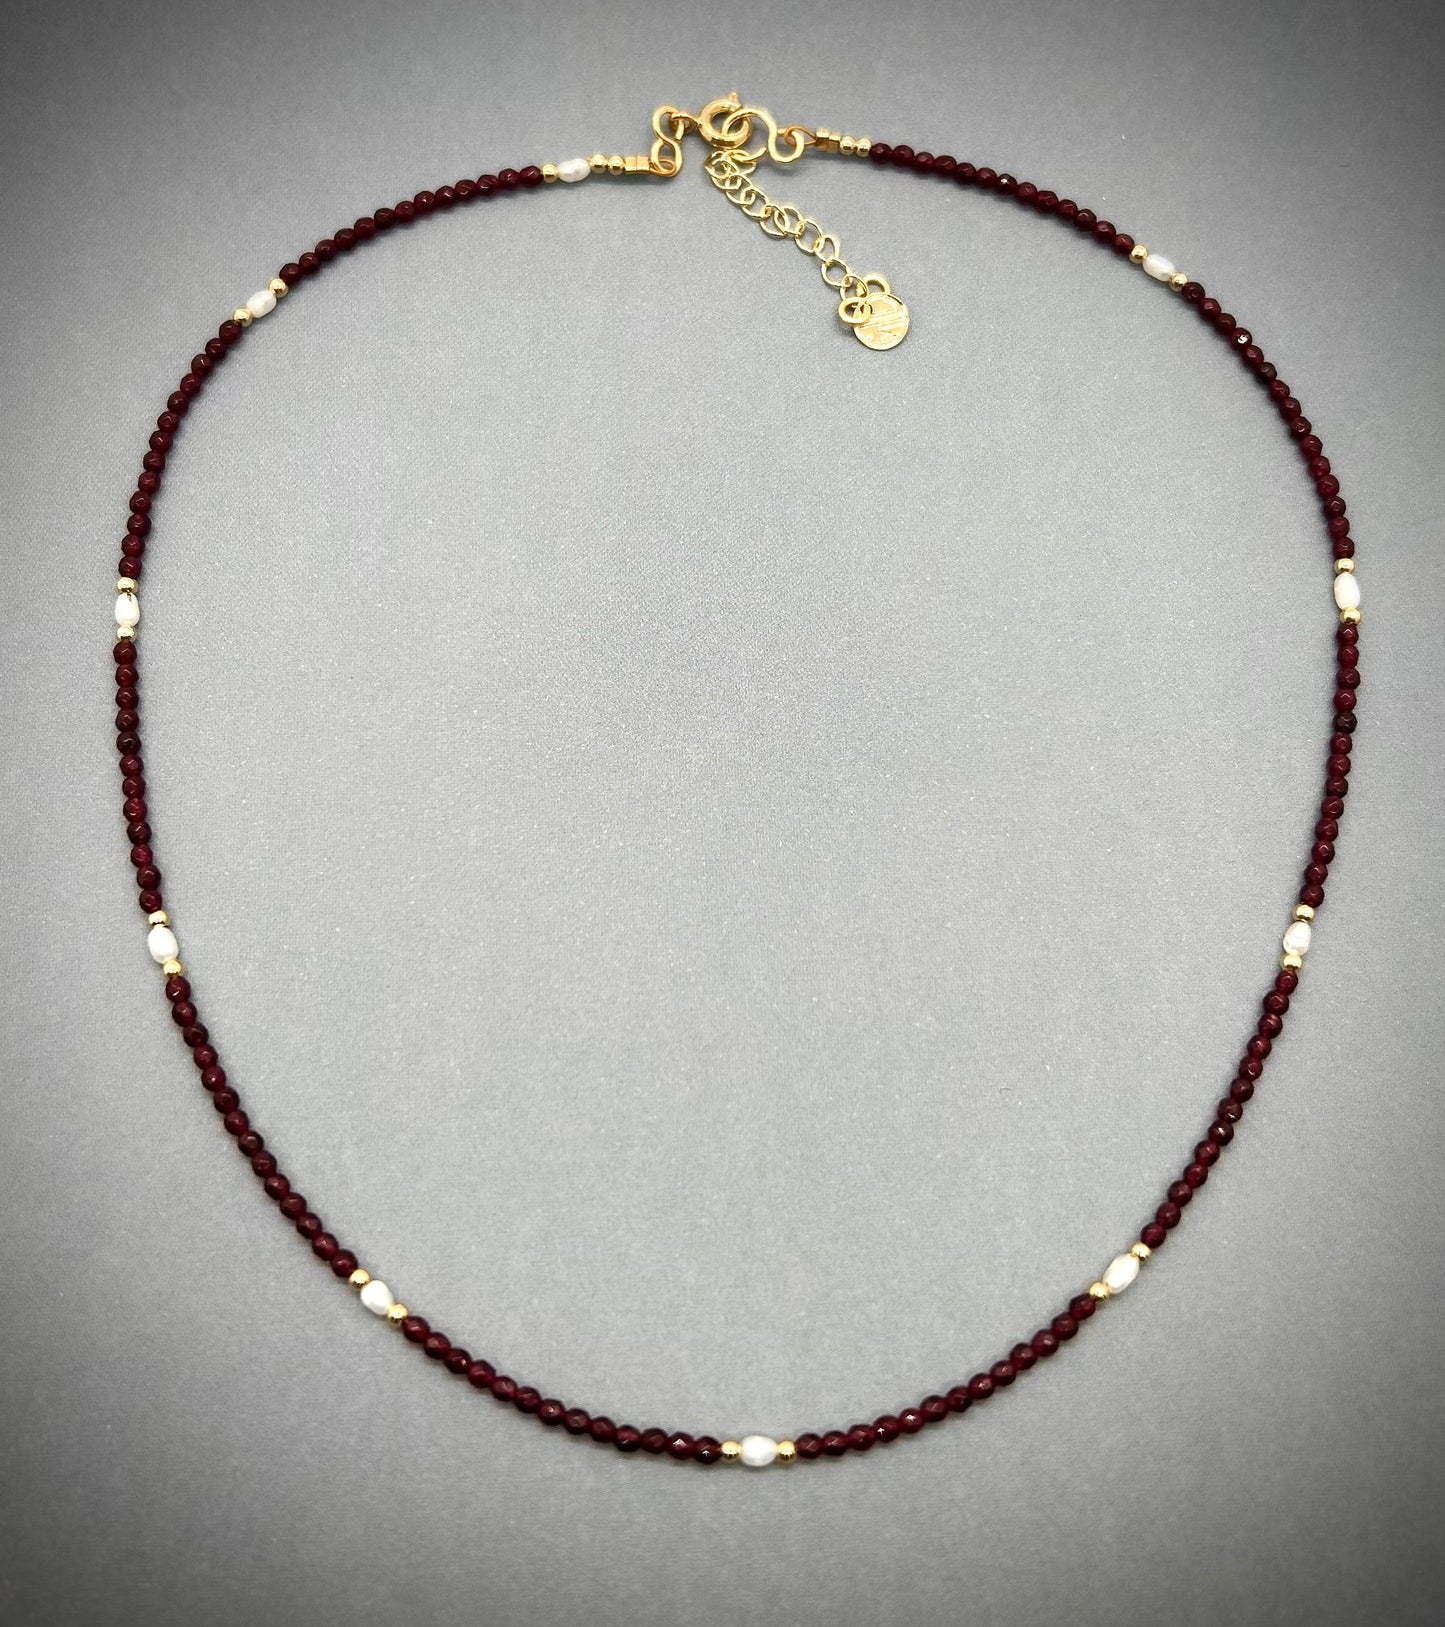 Necklace granate y perlas.